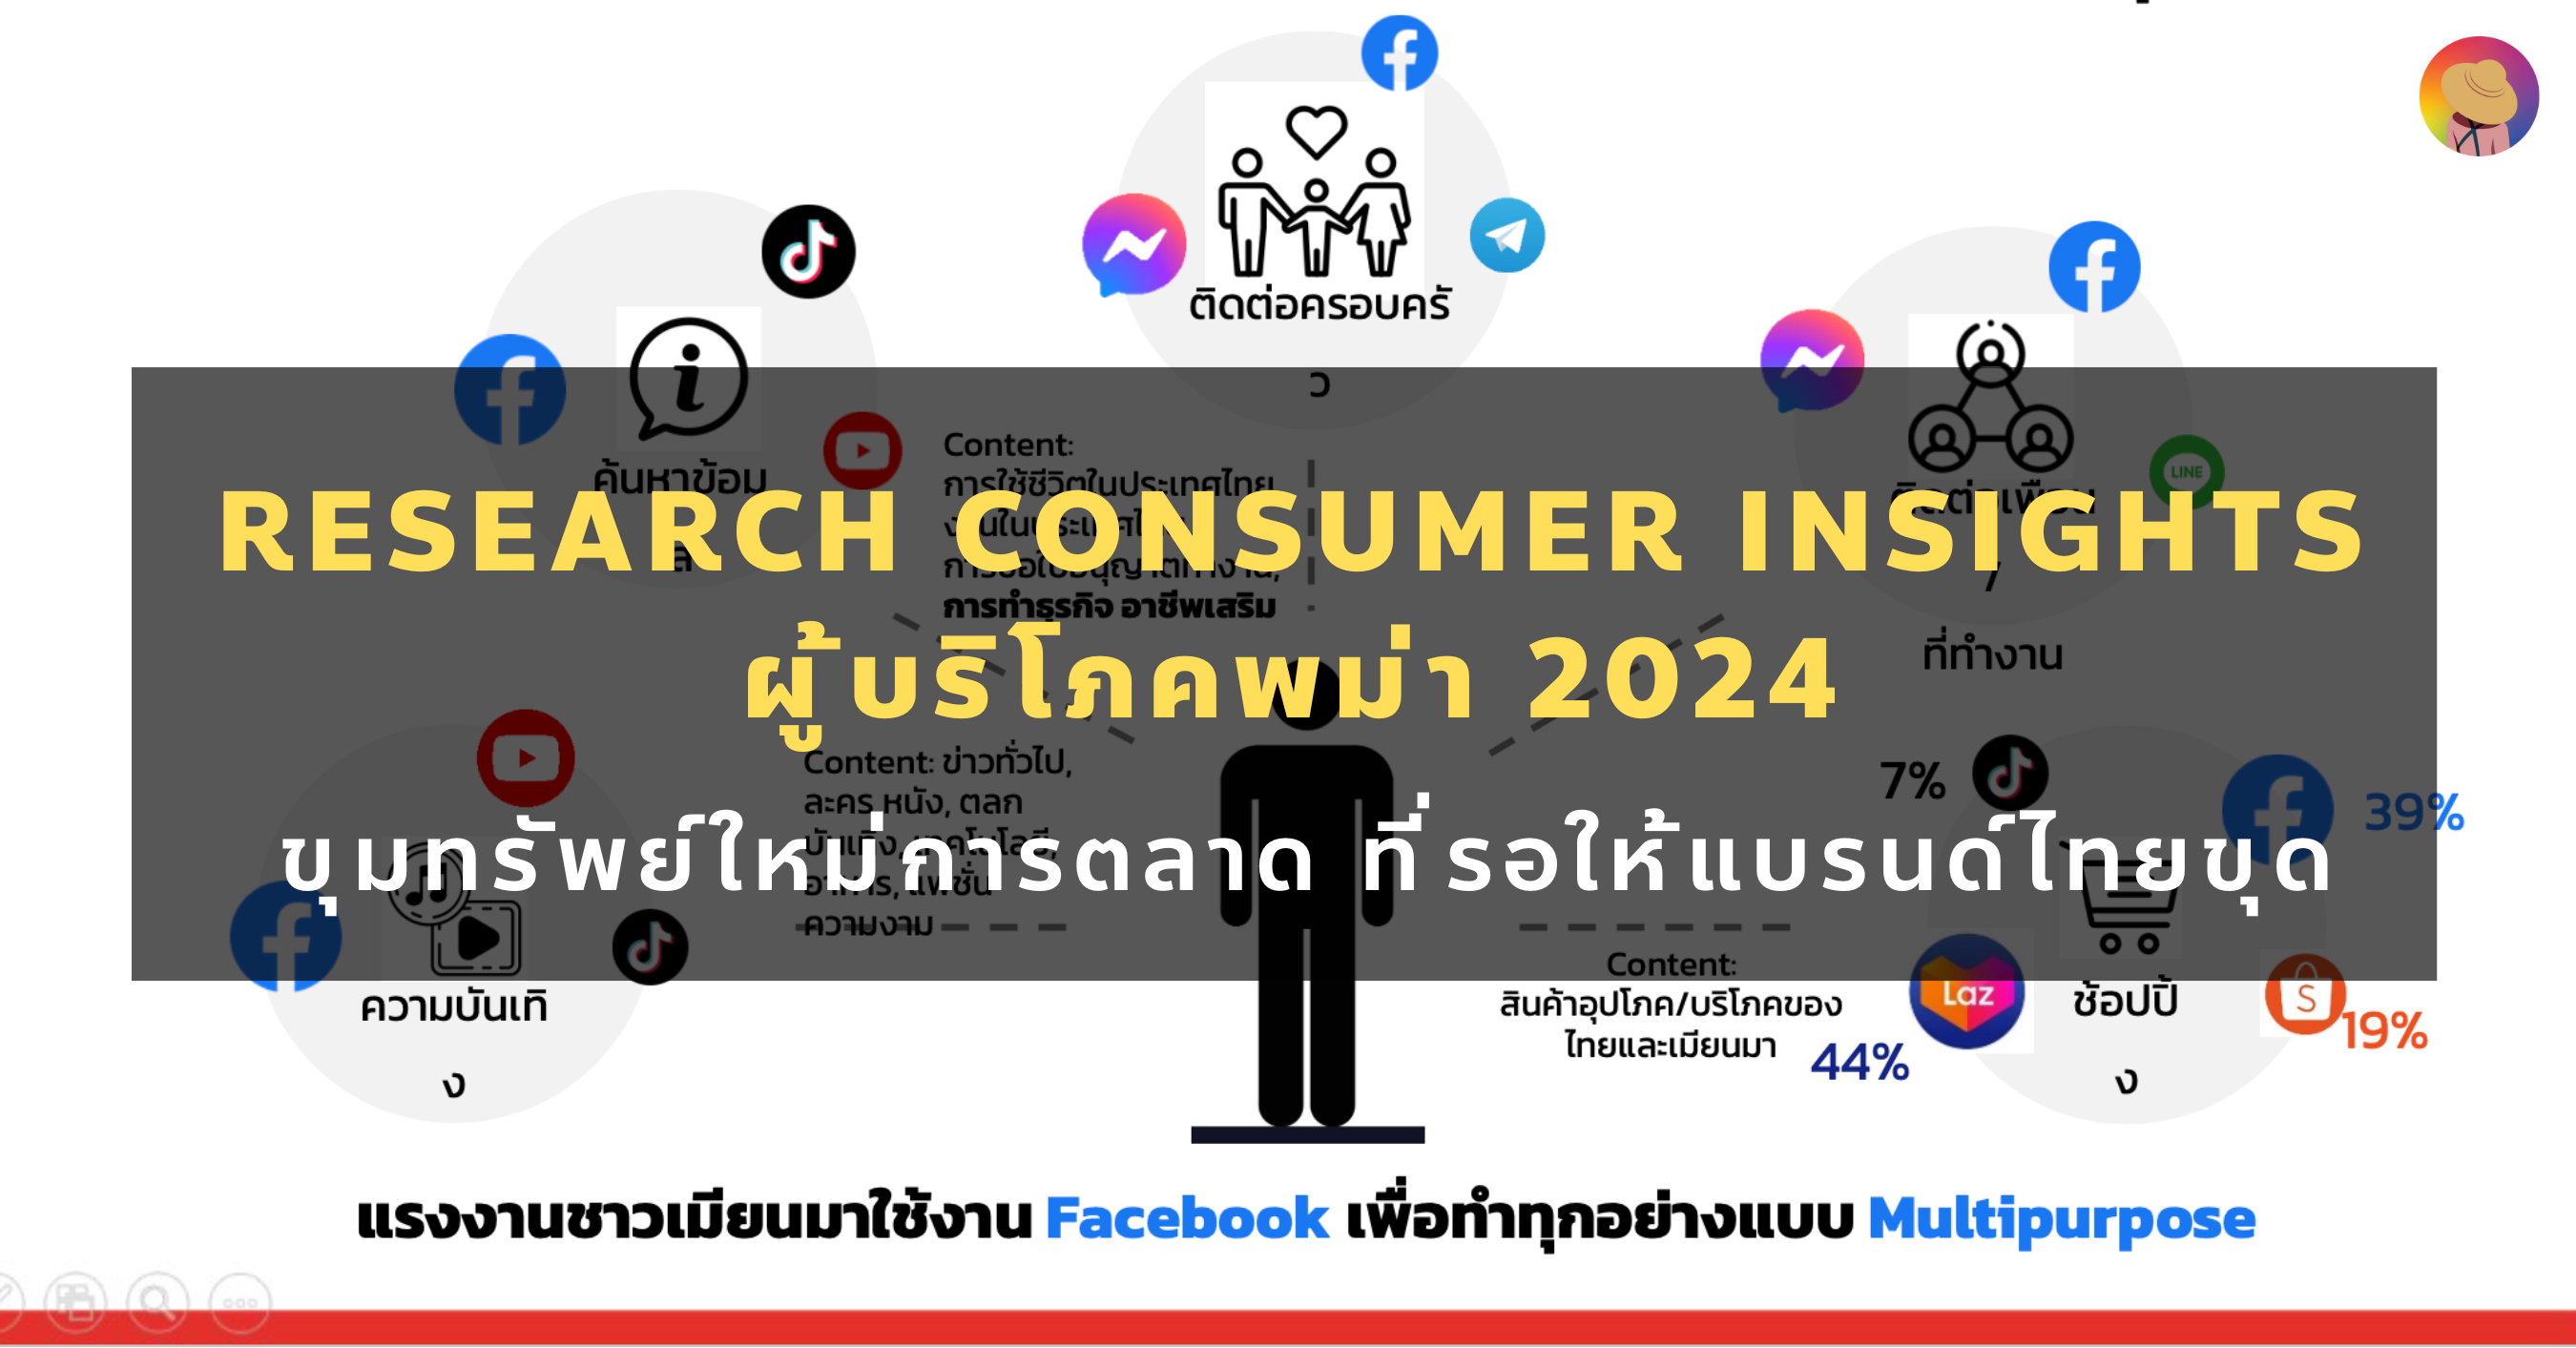 Research consumer insights ผู้บริโภคพม่า 2024 ขุมทรัพย์ใหม่การตลาด